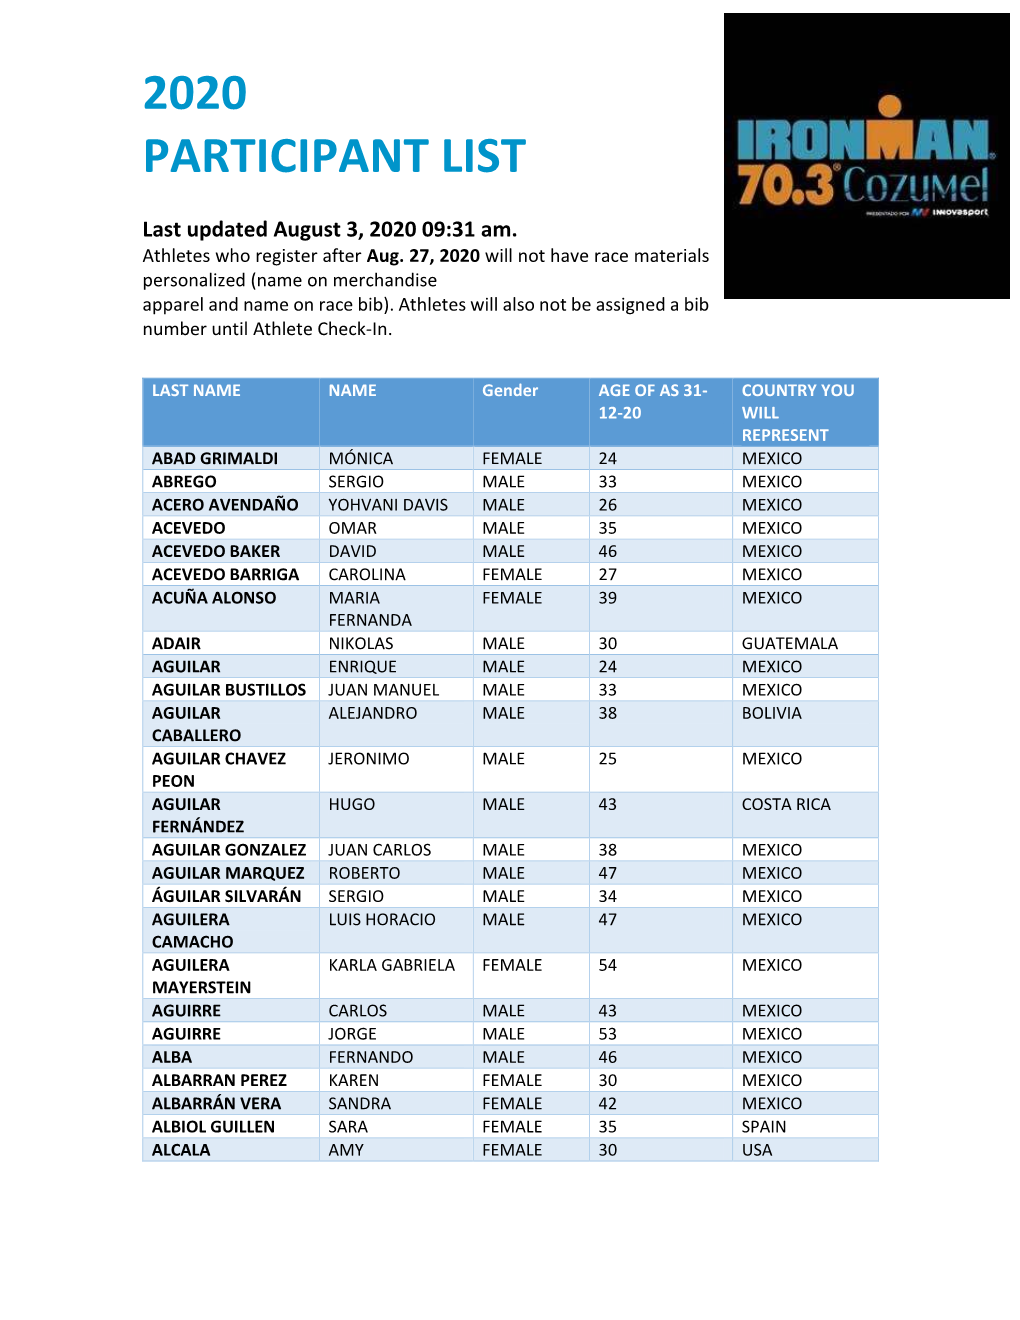 2020 Participant List